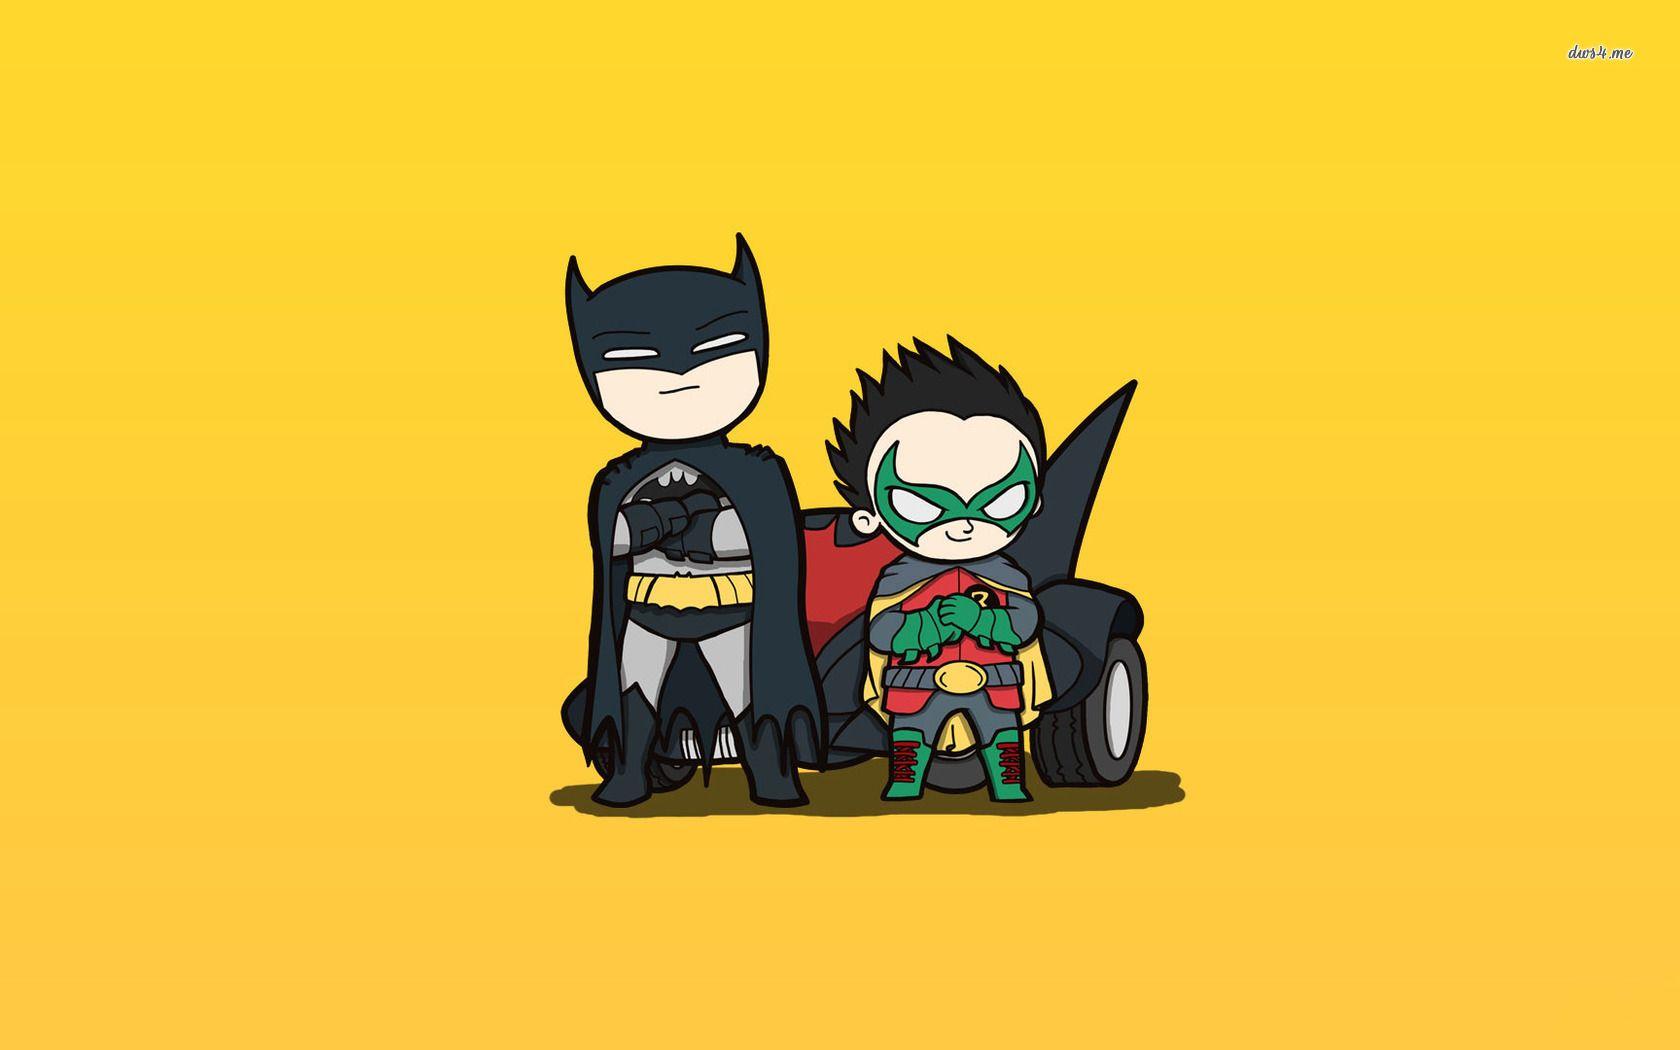 Batman and Robin wallpaper wallpaper